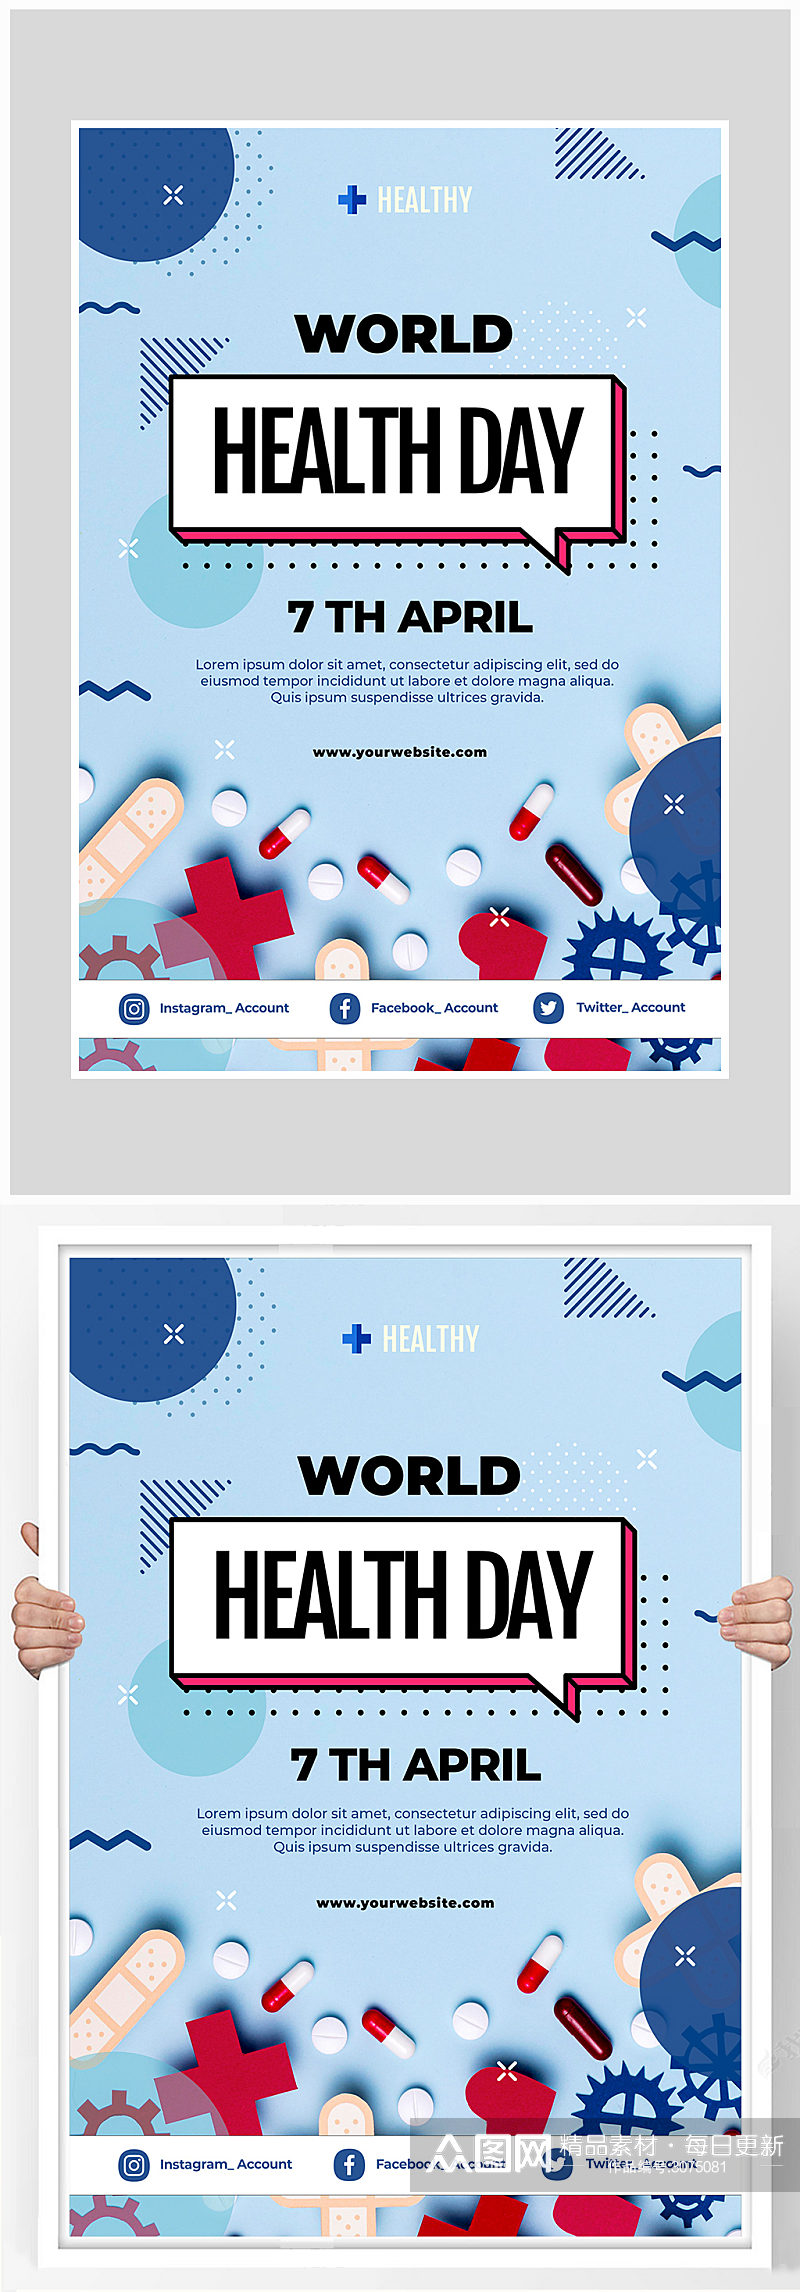 创意简约世界健康日海报设计素材